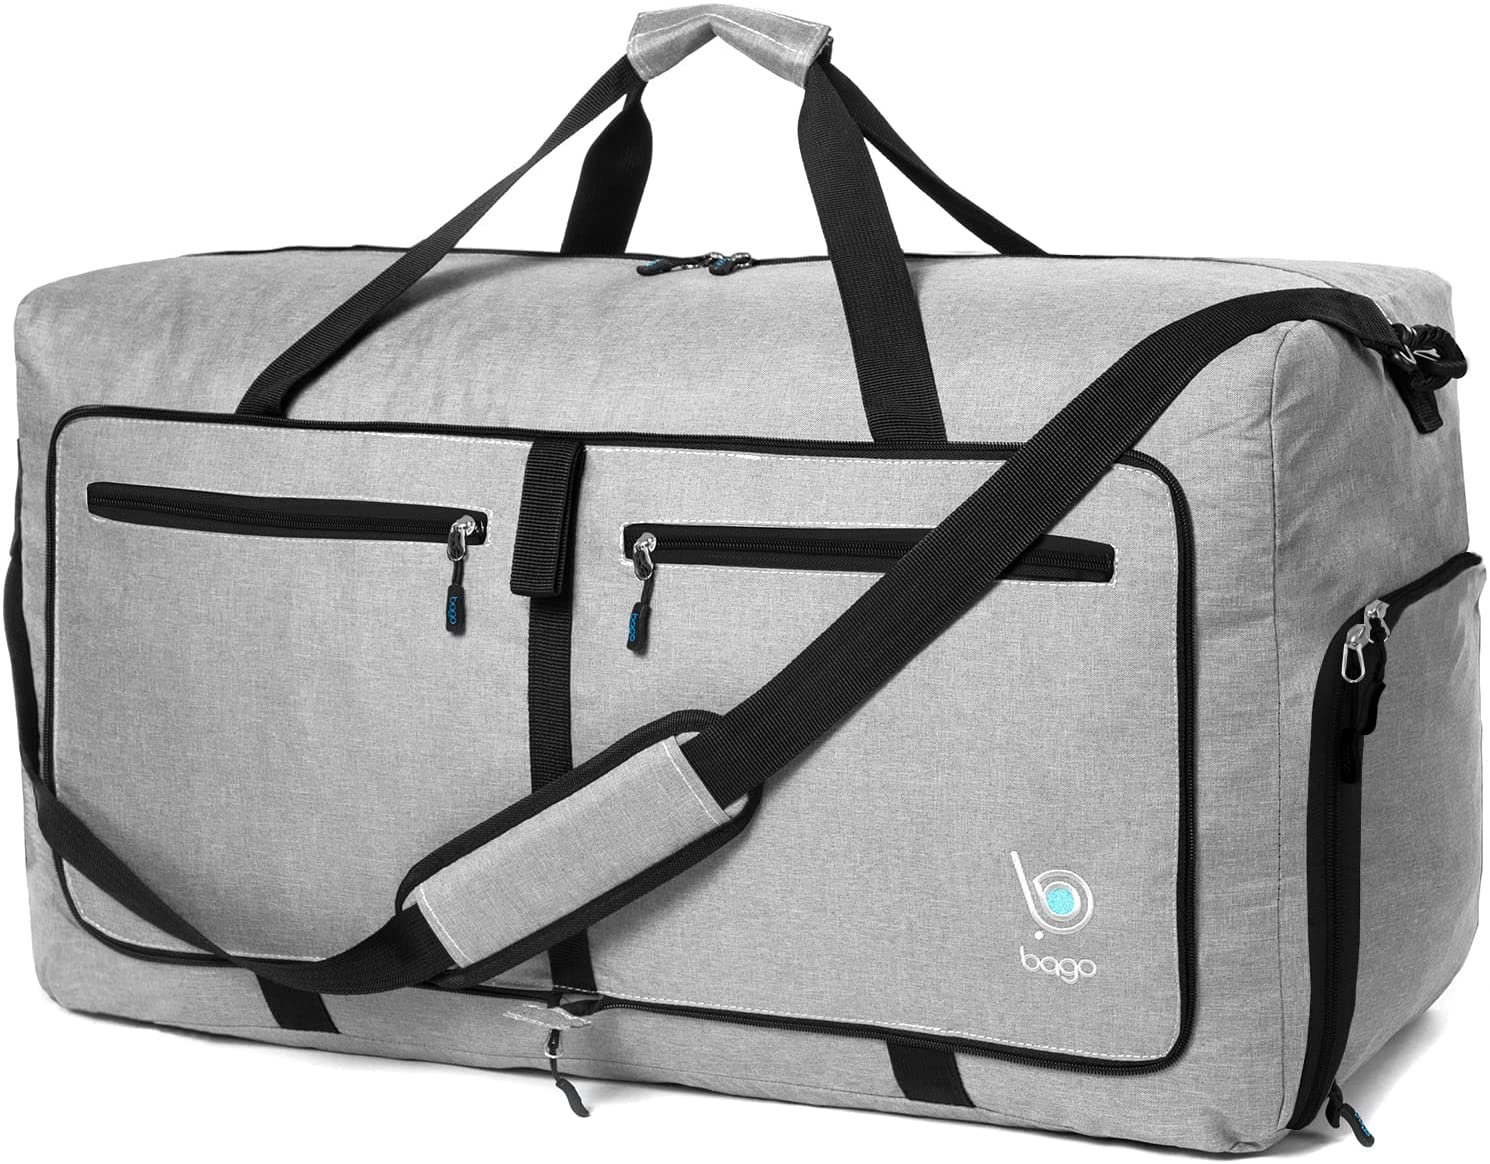 BAGO 60L Travel Duffel Bag